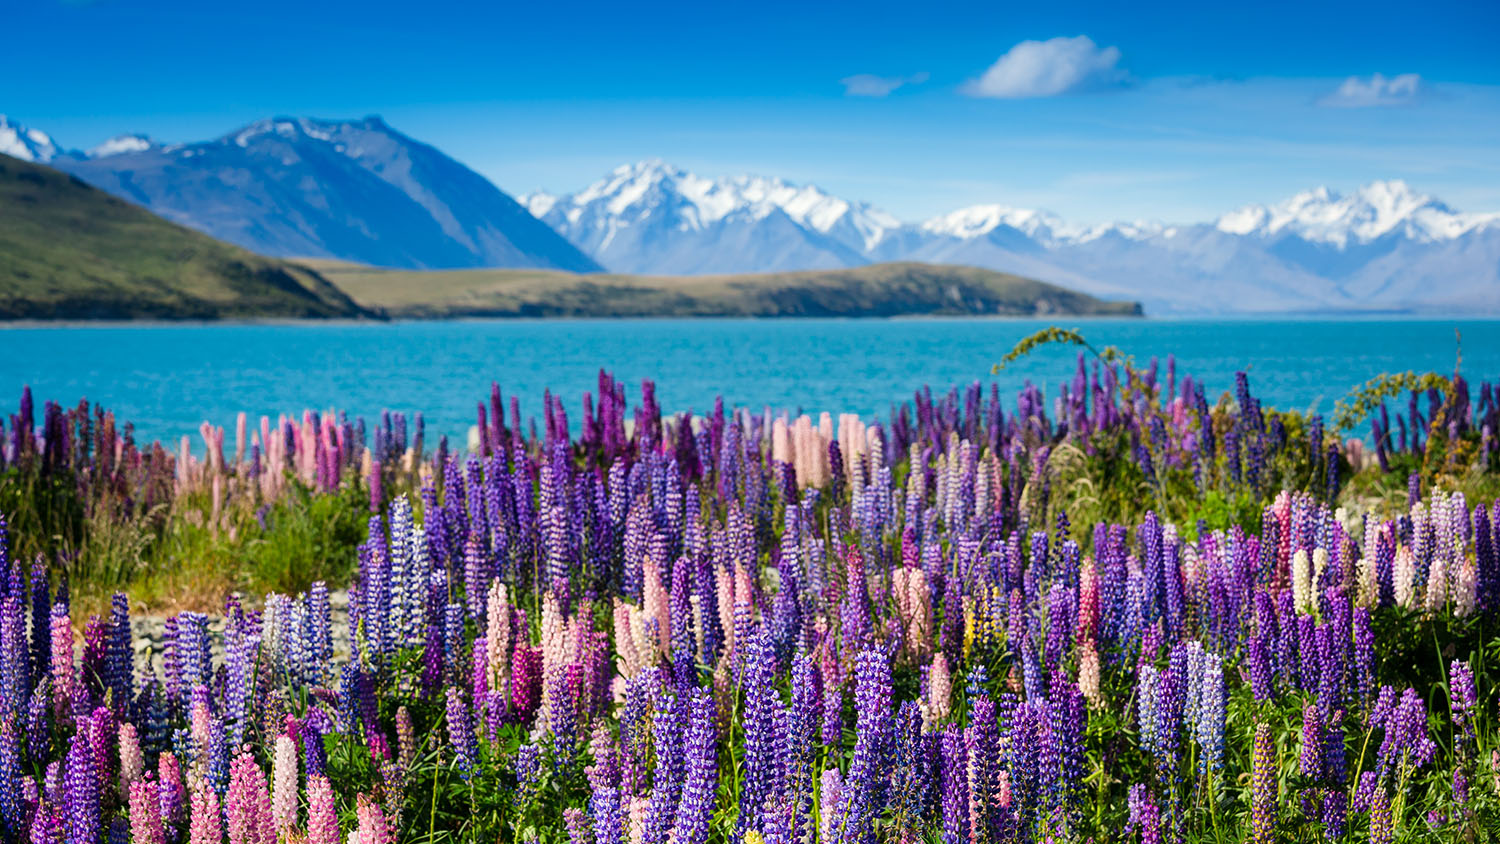 New Zealand's unique landscape